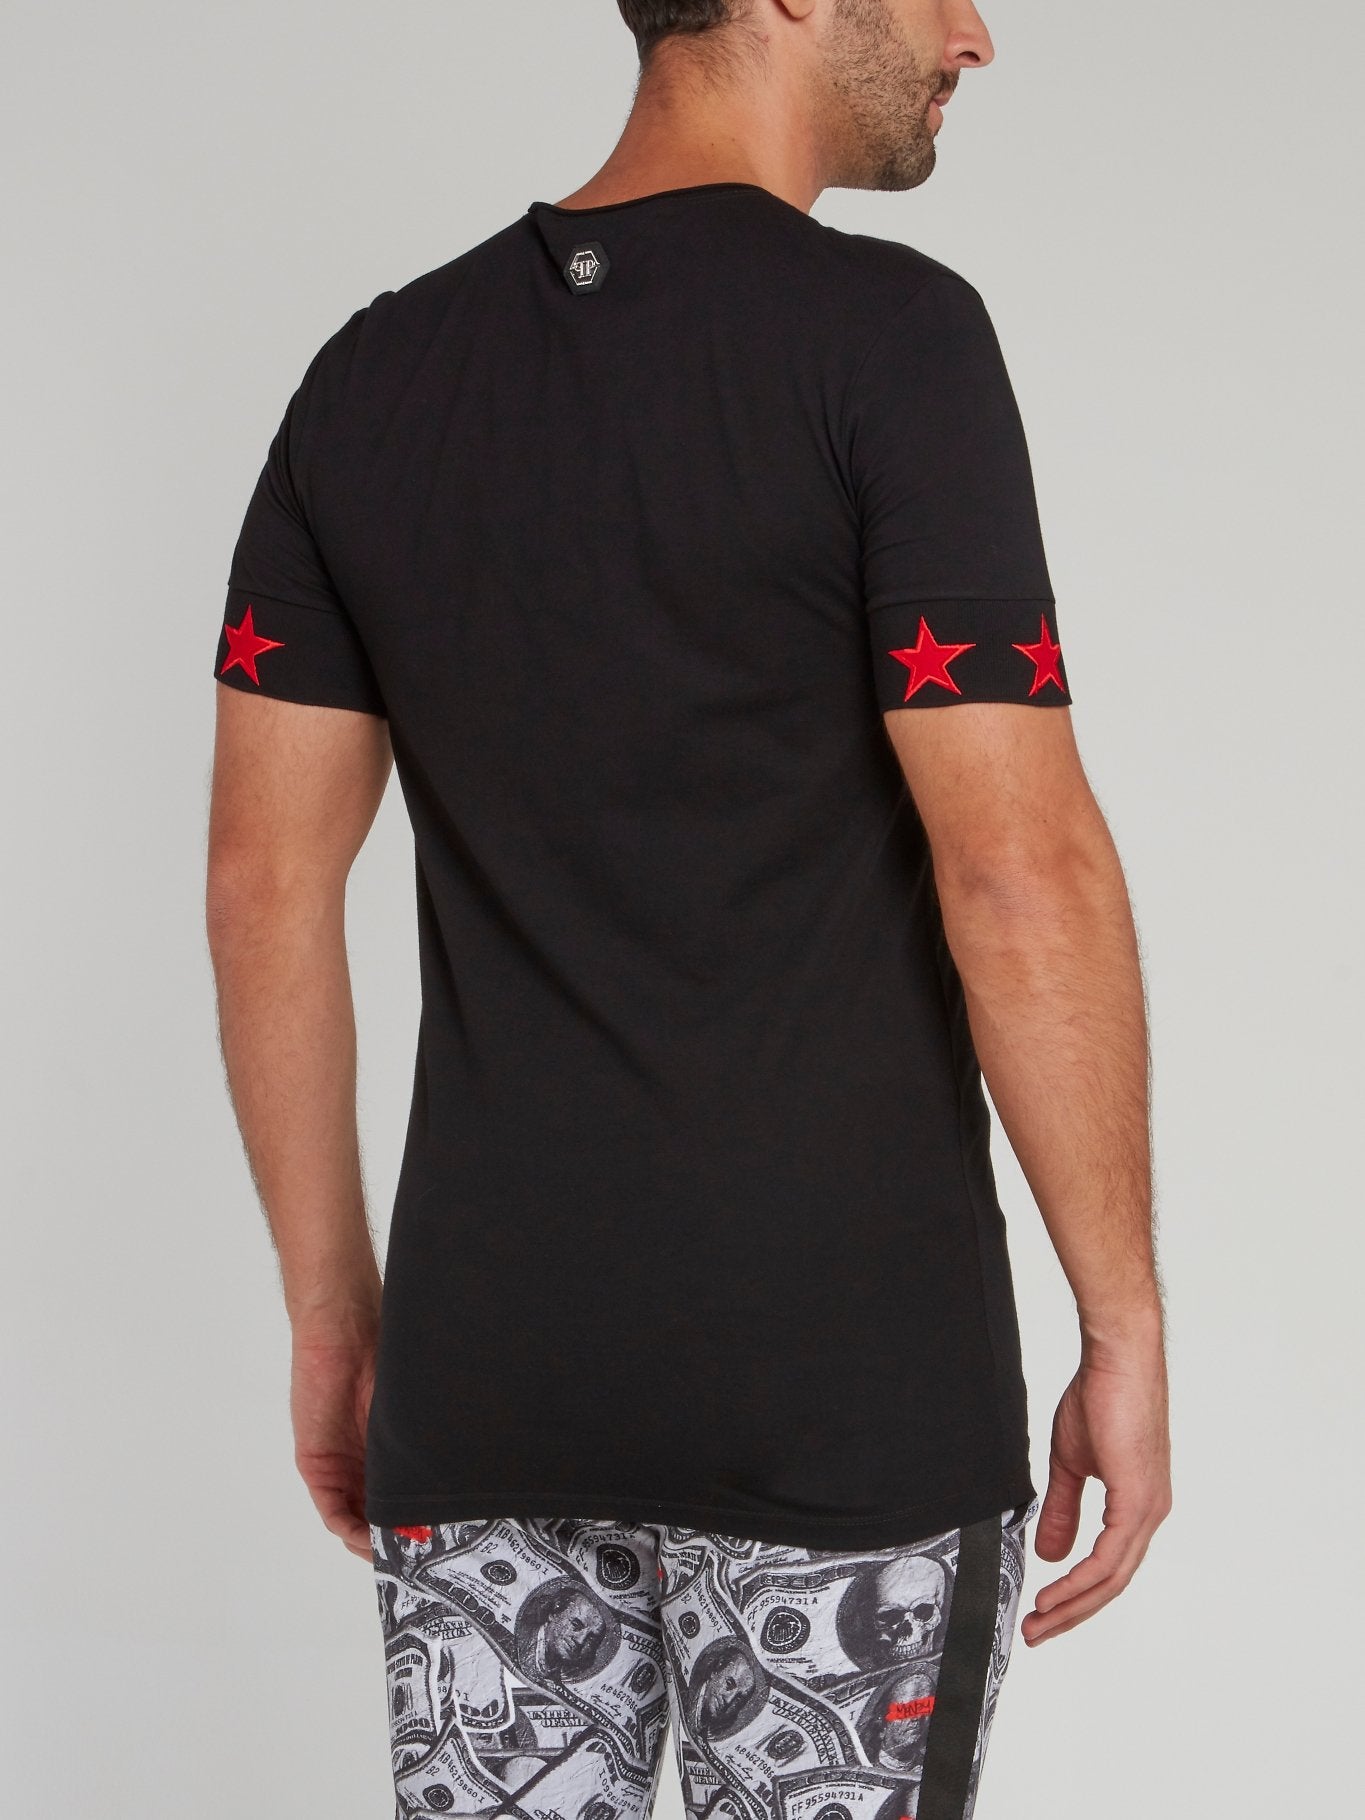 Черная футболка с красными звездами и черепом